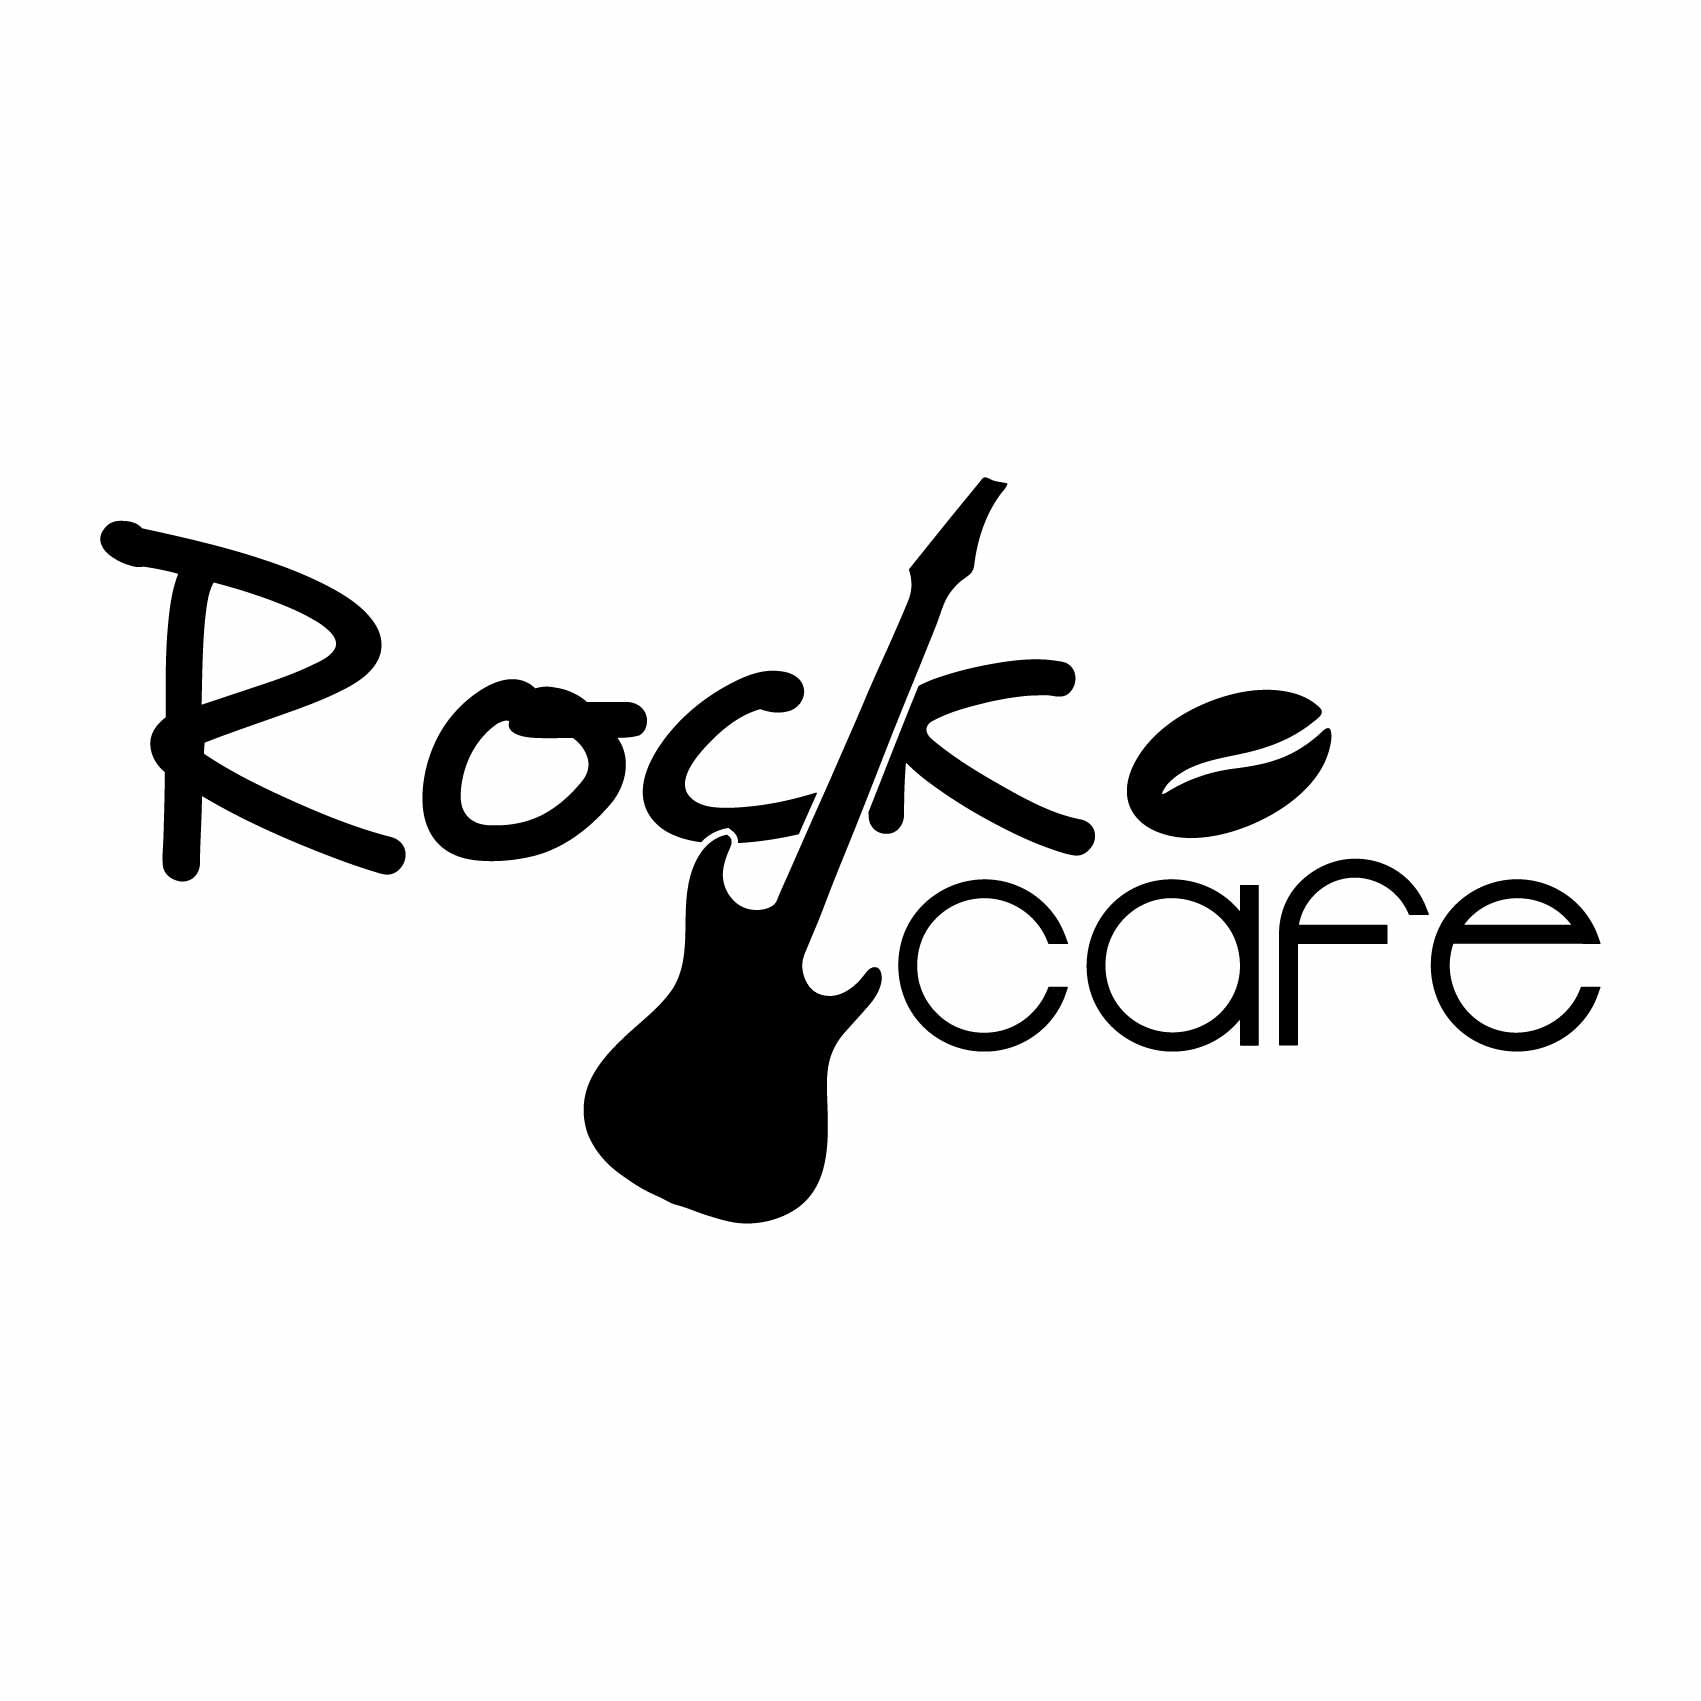 stickers-rock-cafe-ref8cafe-autocollant-muraux-café-sticker-mural-cuisine-coffee-deco-salon-table-(2)